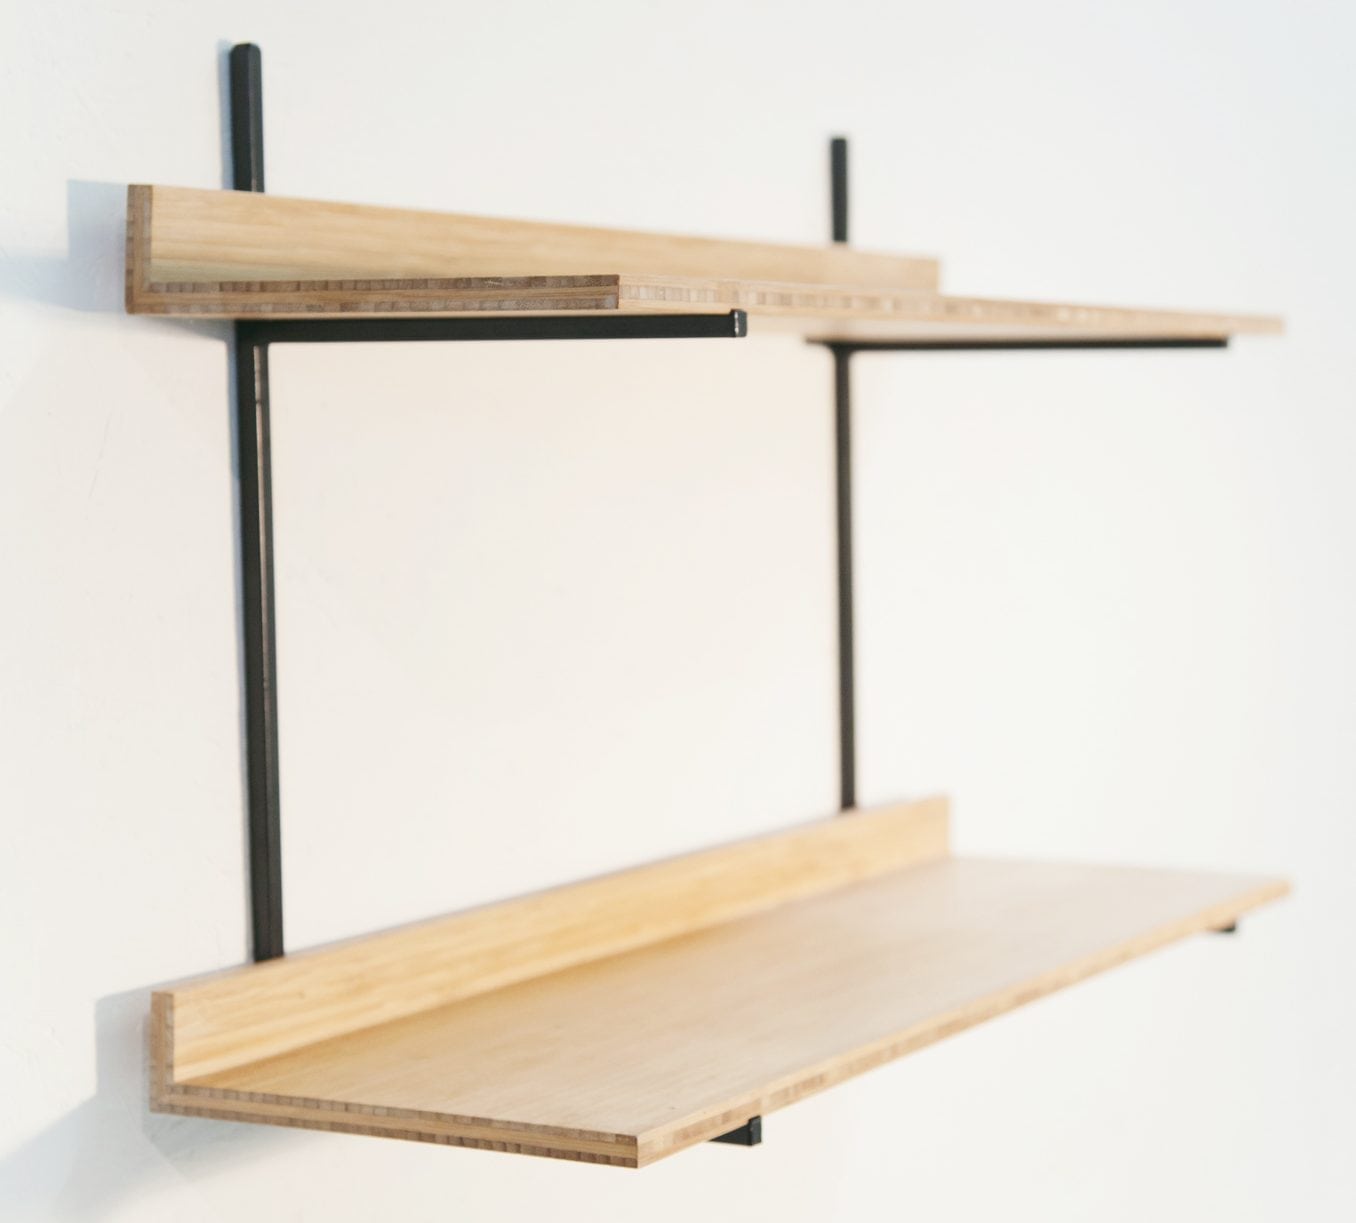 De Mini Wandkast is een minimalistisch en tijdloos design uit de Mogelijkheid Collectie, een samenwerkingsverband tussen ontwerper Don Zweedijk en de beschutte metaalwerkplaats het Maliegilde in Utrecht. De Mini Wandkast bestaat uit twee metalen frames en twee legplanken.